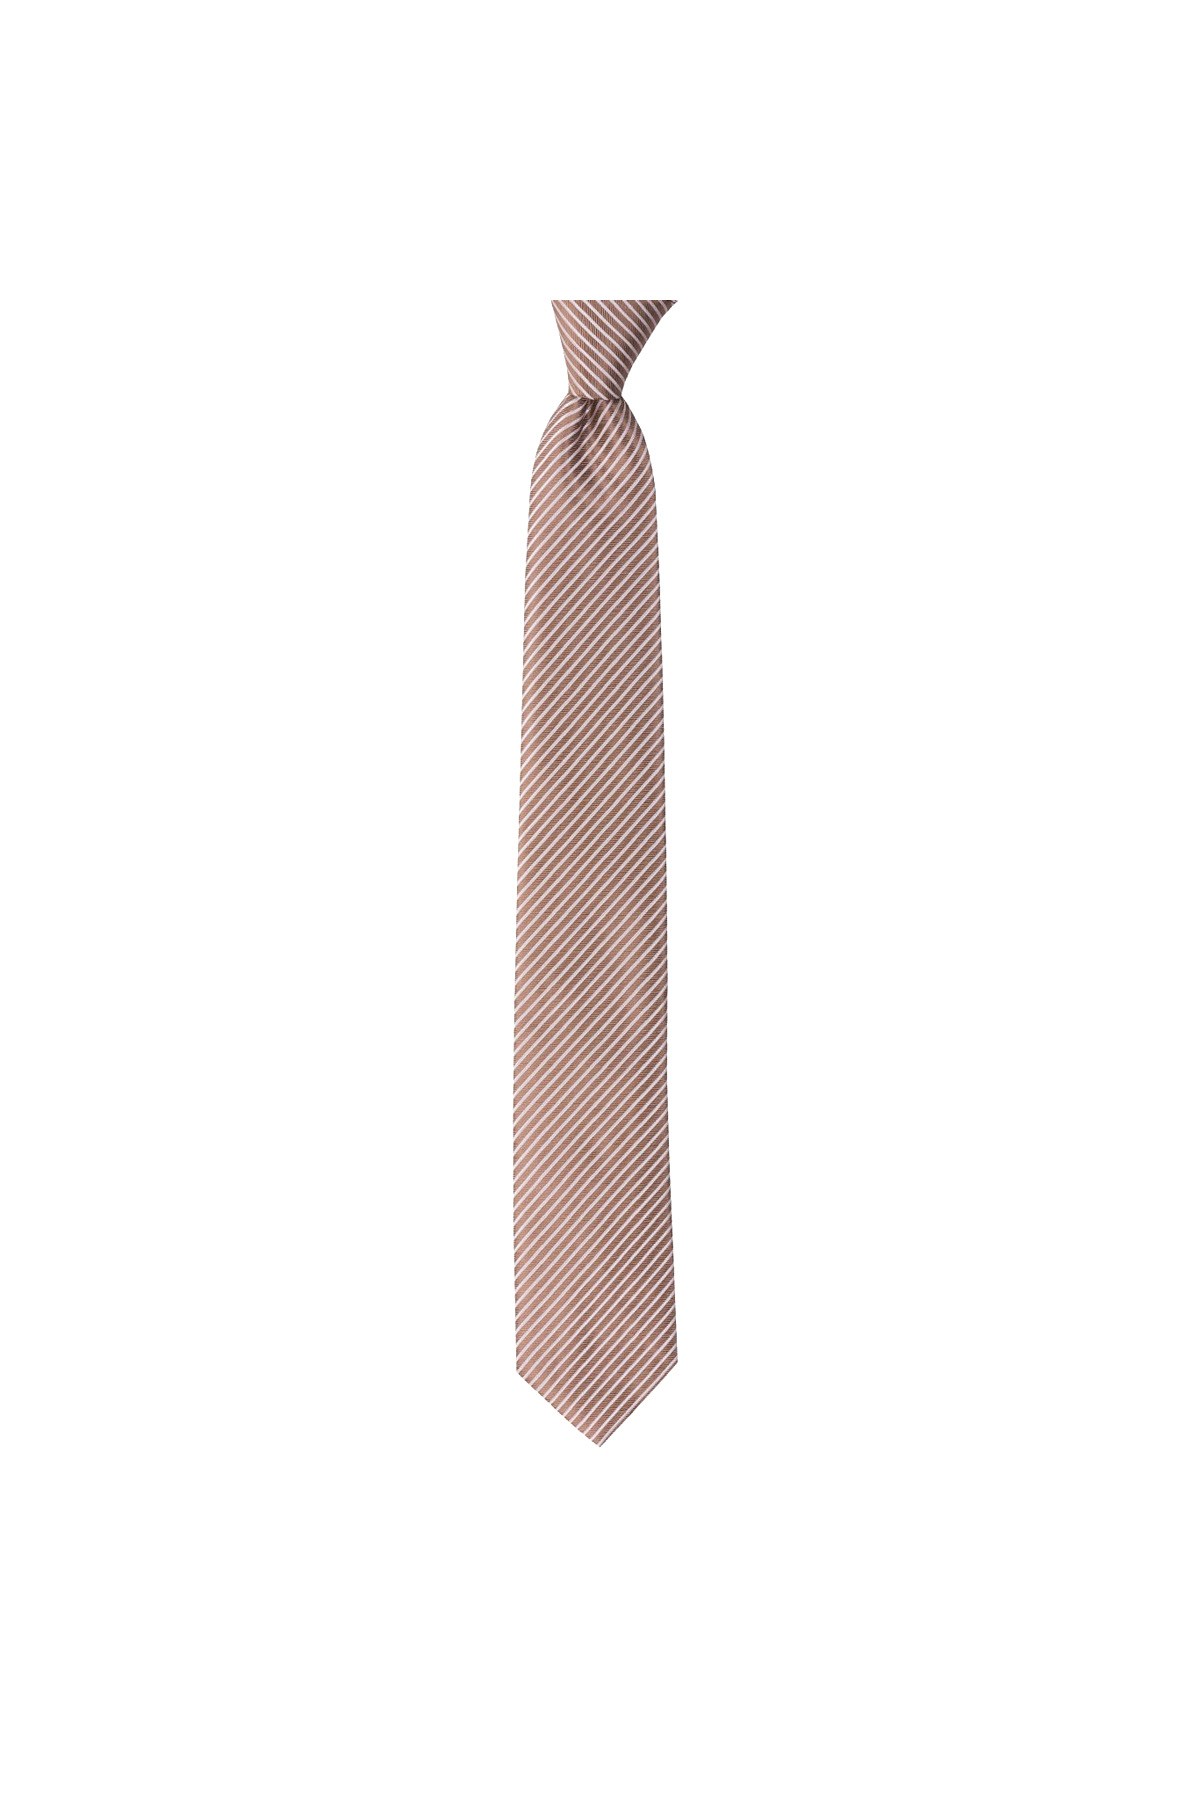 Çok çizgili 8 cm genişliğinde klasik kravat - Bej